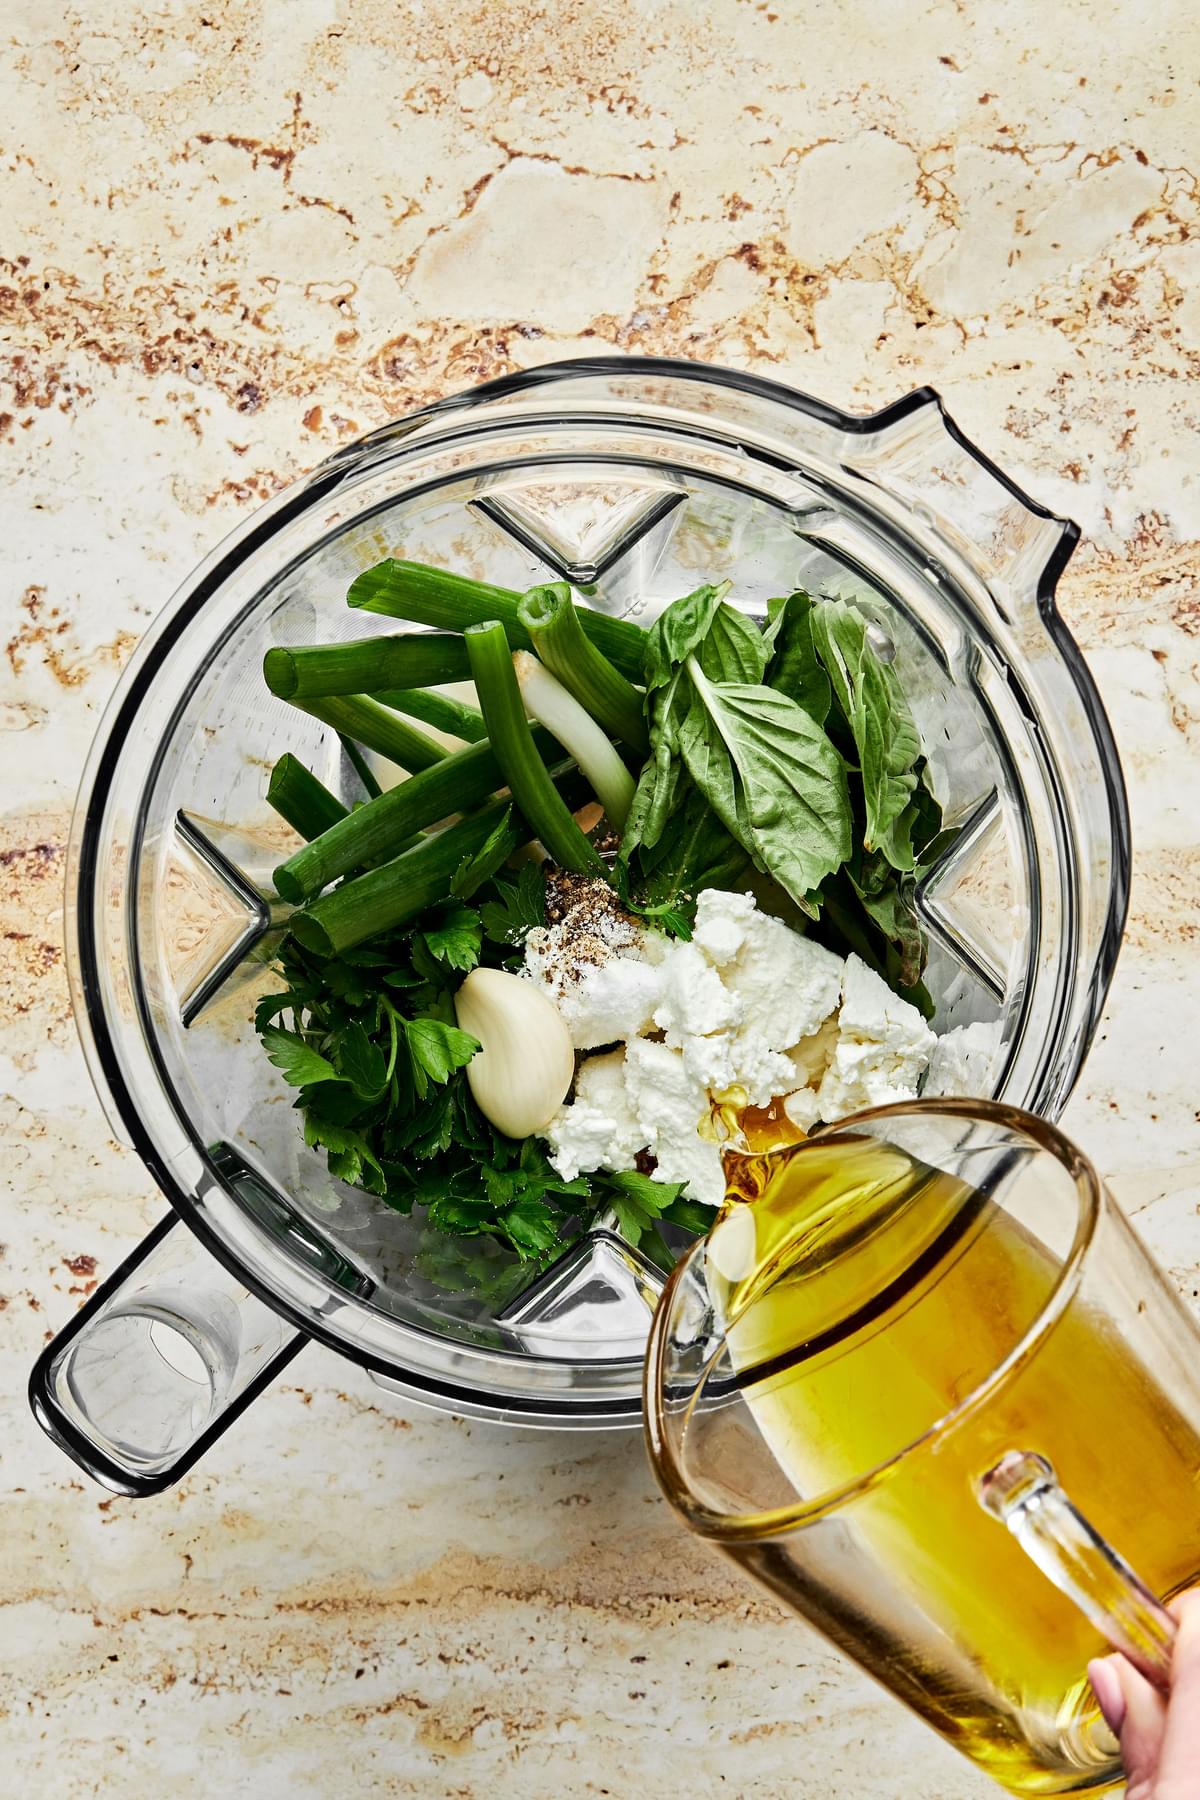 goat cheese, olive oil, fresh herbs, fish sauce, lemon juice, pepper & salt in a blender to make green goddess dressing